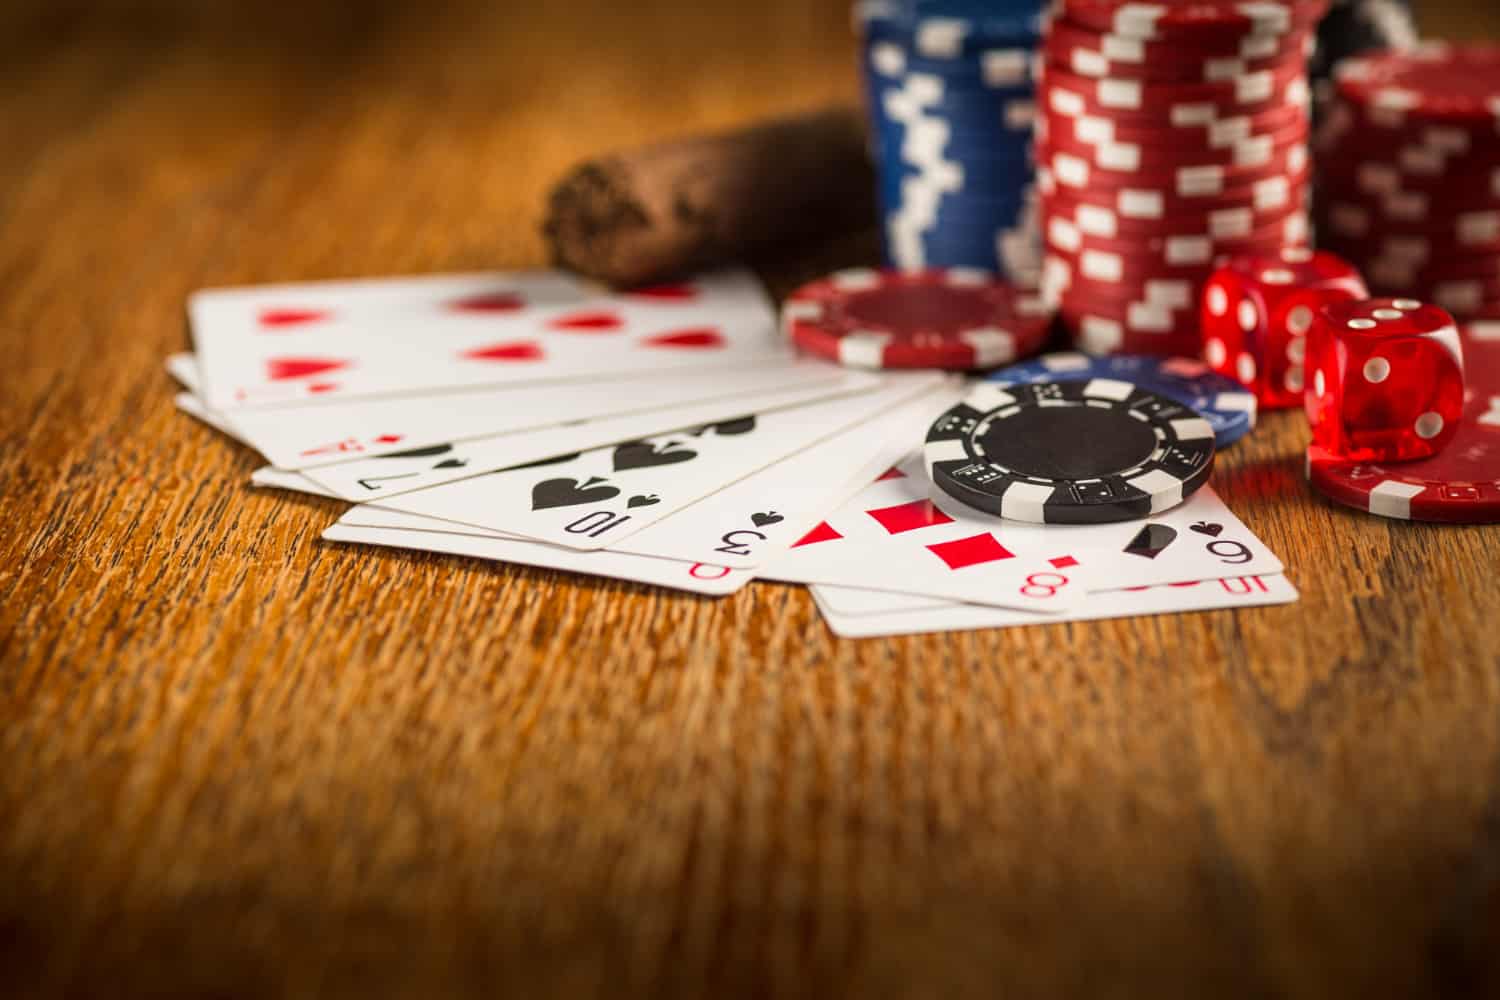 Melhores sites para jogar pôquer online em 2021 | da697f41 cartas2 | apostas | jogar pôquer online apostas